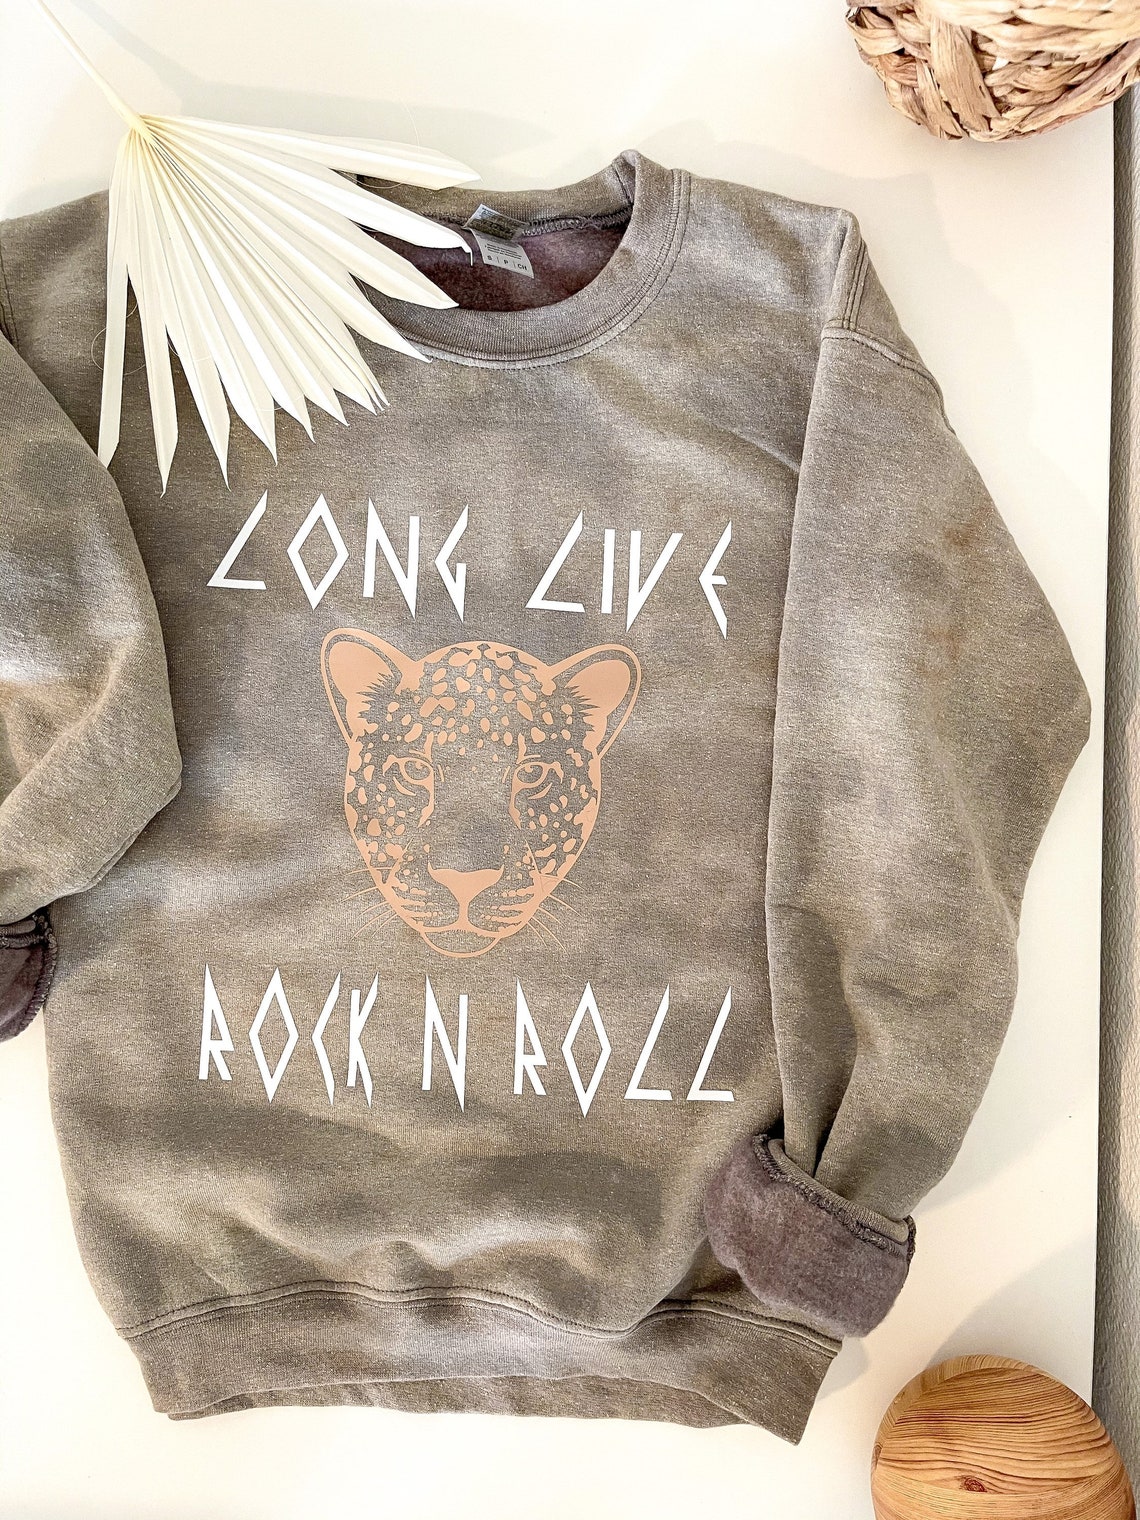 Rock n roll leopard sweatshirt reverse tie dye sweatshirt | Etsy